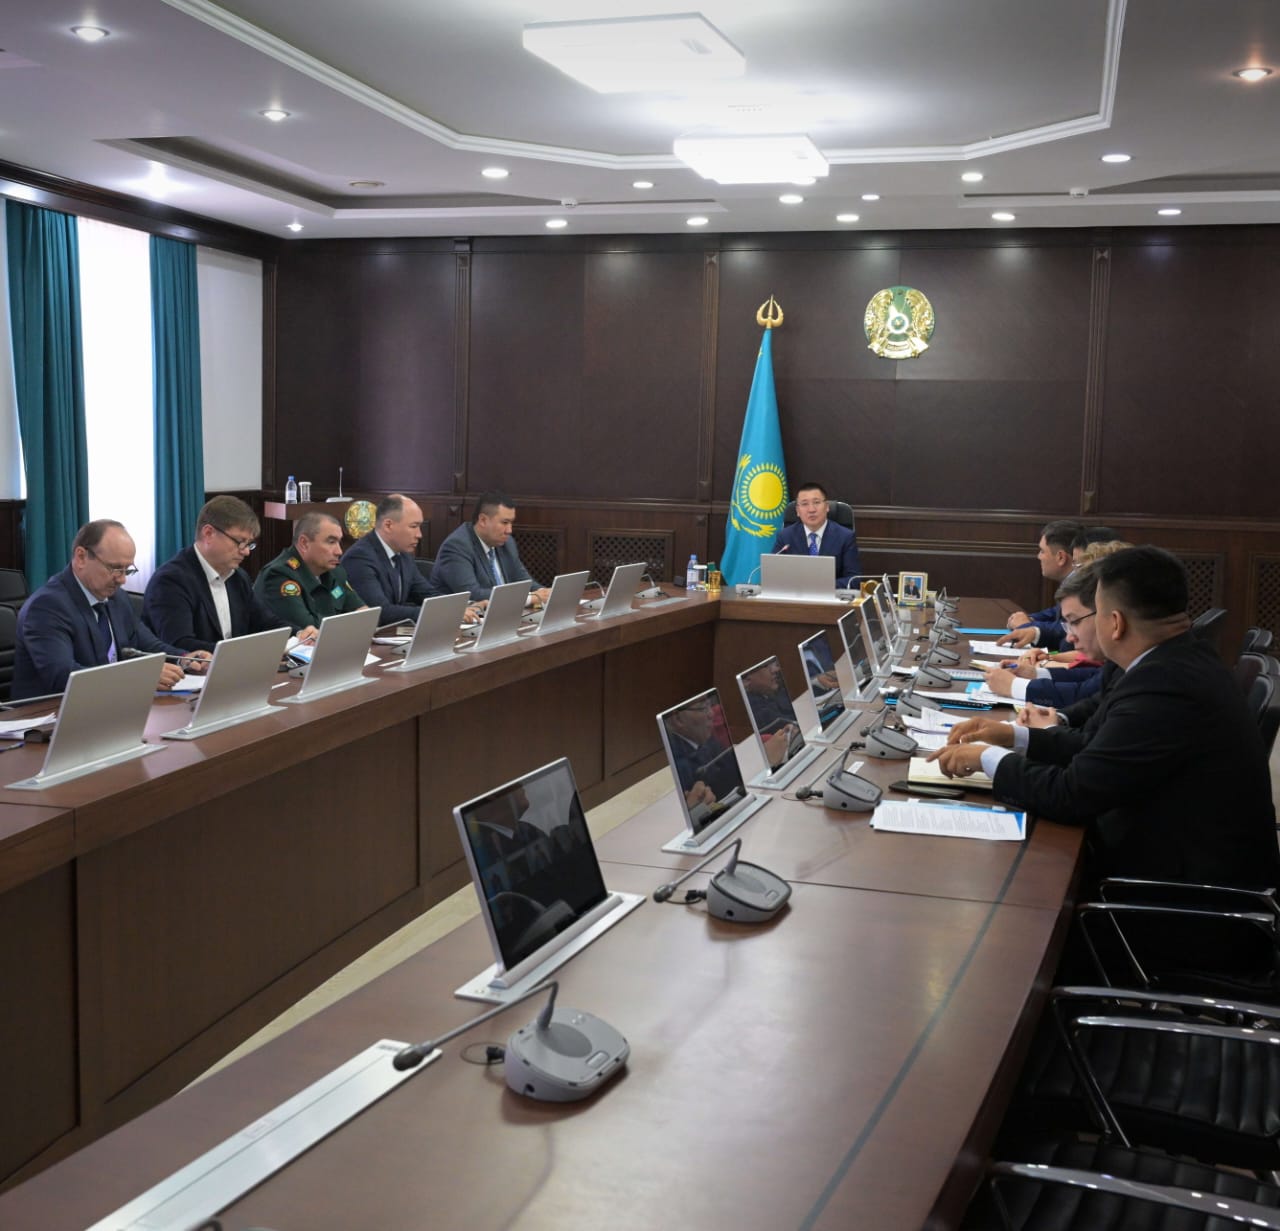 Сегодня глава региона Асаин Байханов провел совещание по обеспечению бесперебойного электроснабжения городов и районов области